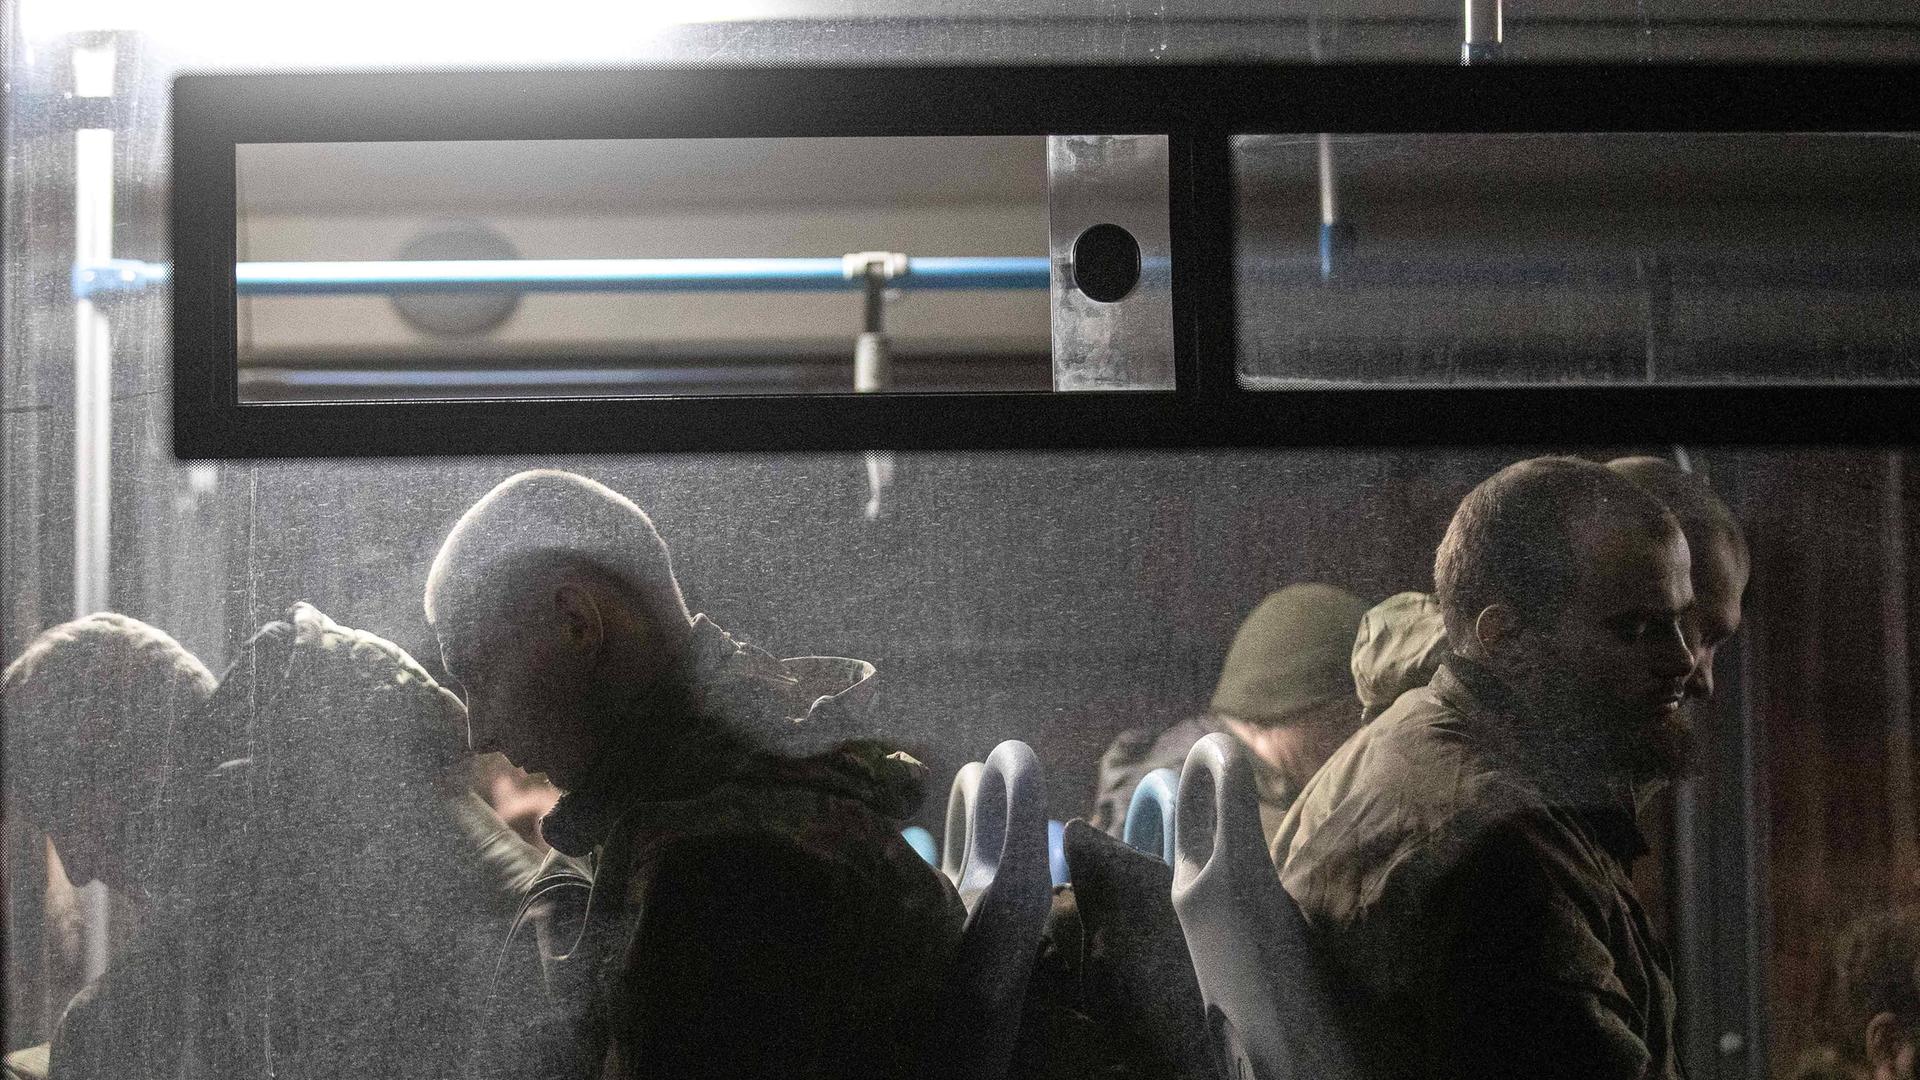 Durch eine Busfensterscheibe sieht man mehrere Soldaten sitzen, die von oben beleuchtet werden. Draußen ist es dunkel.